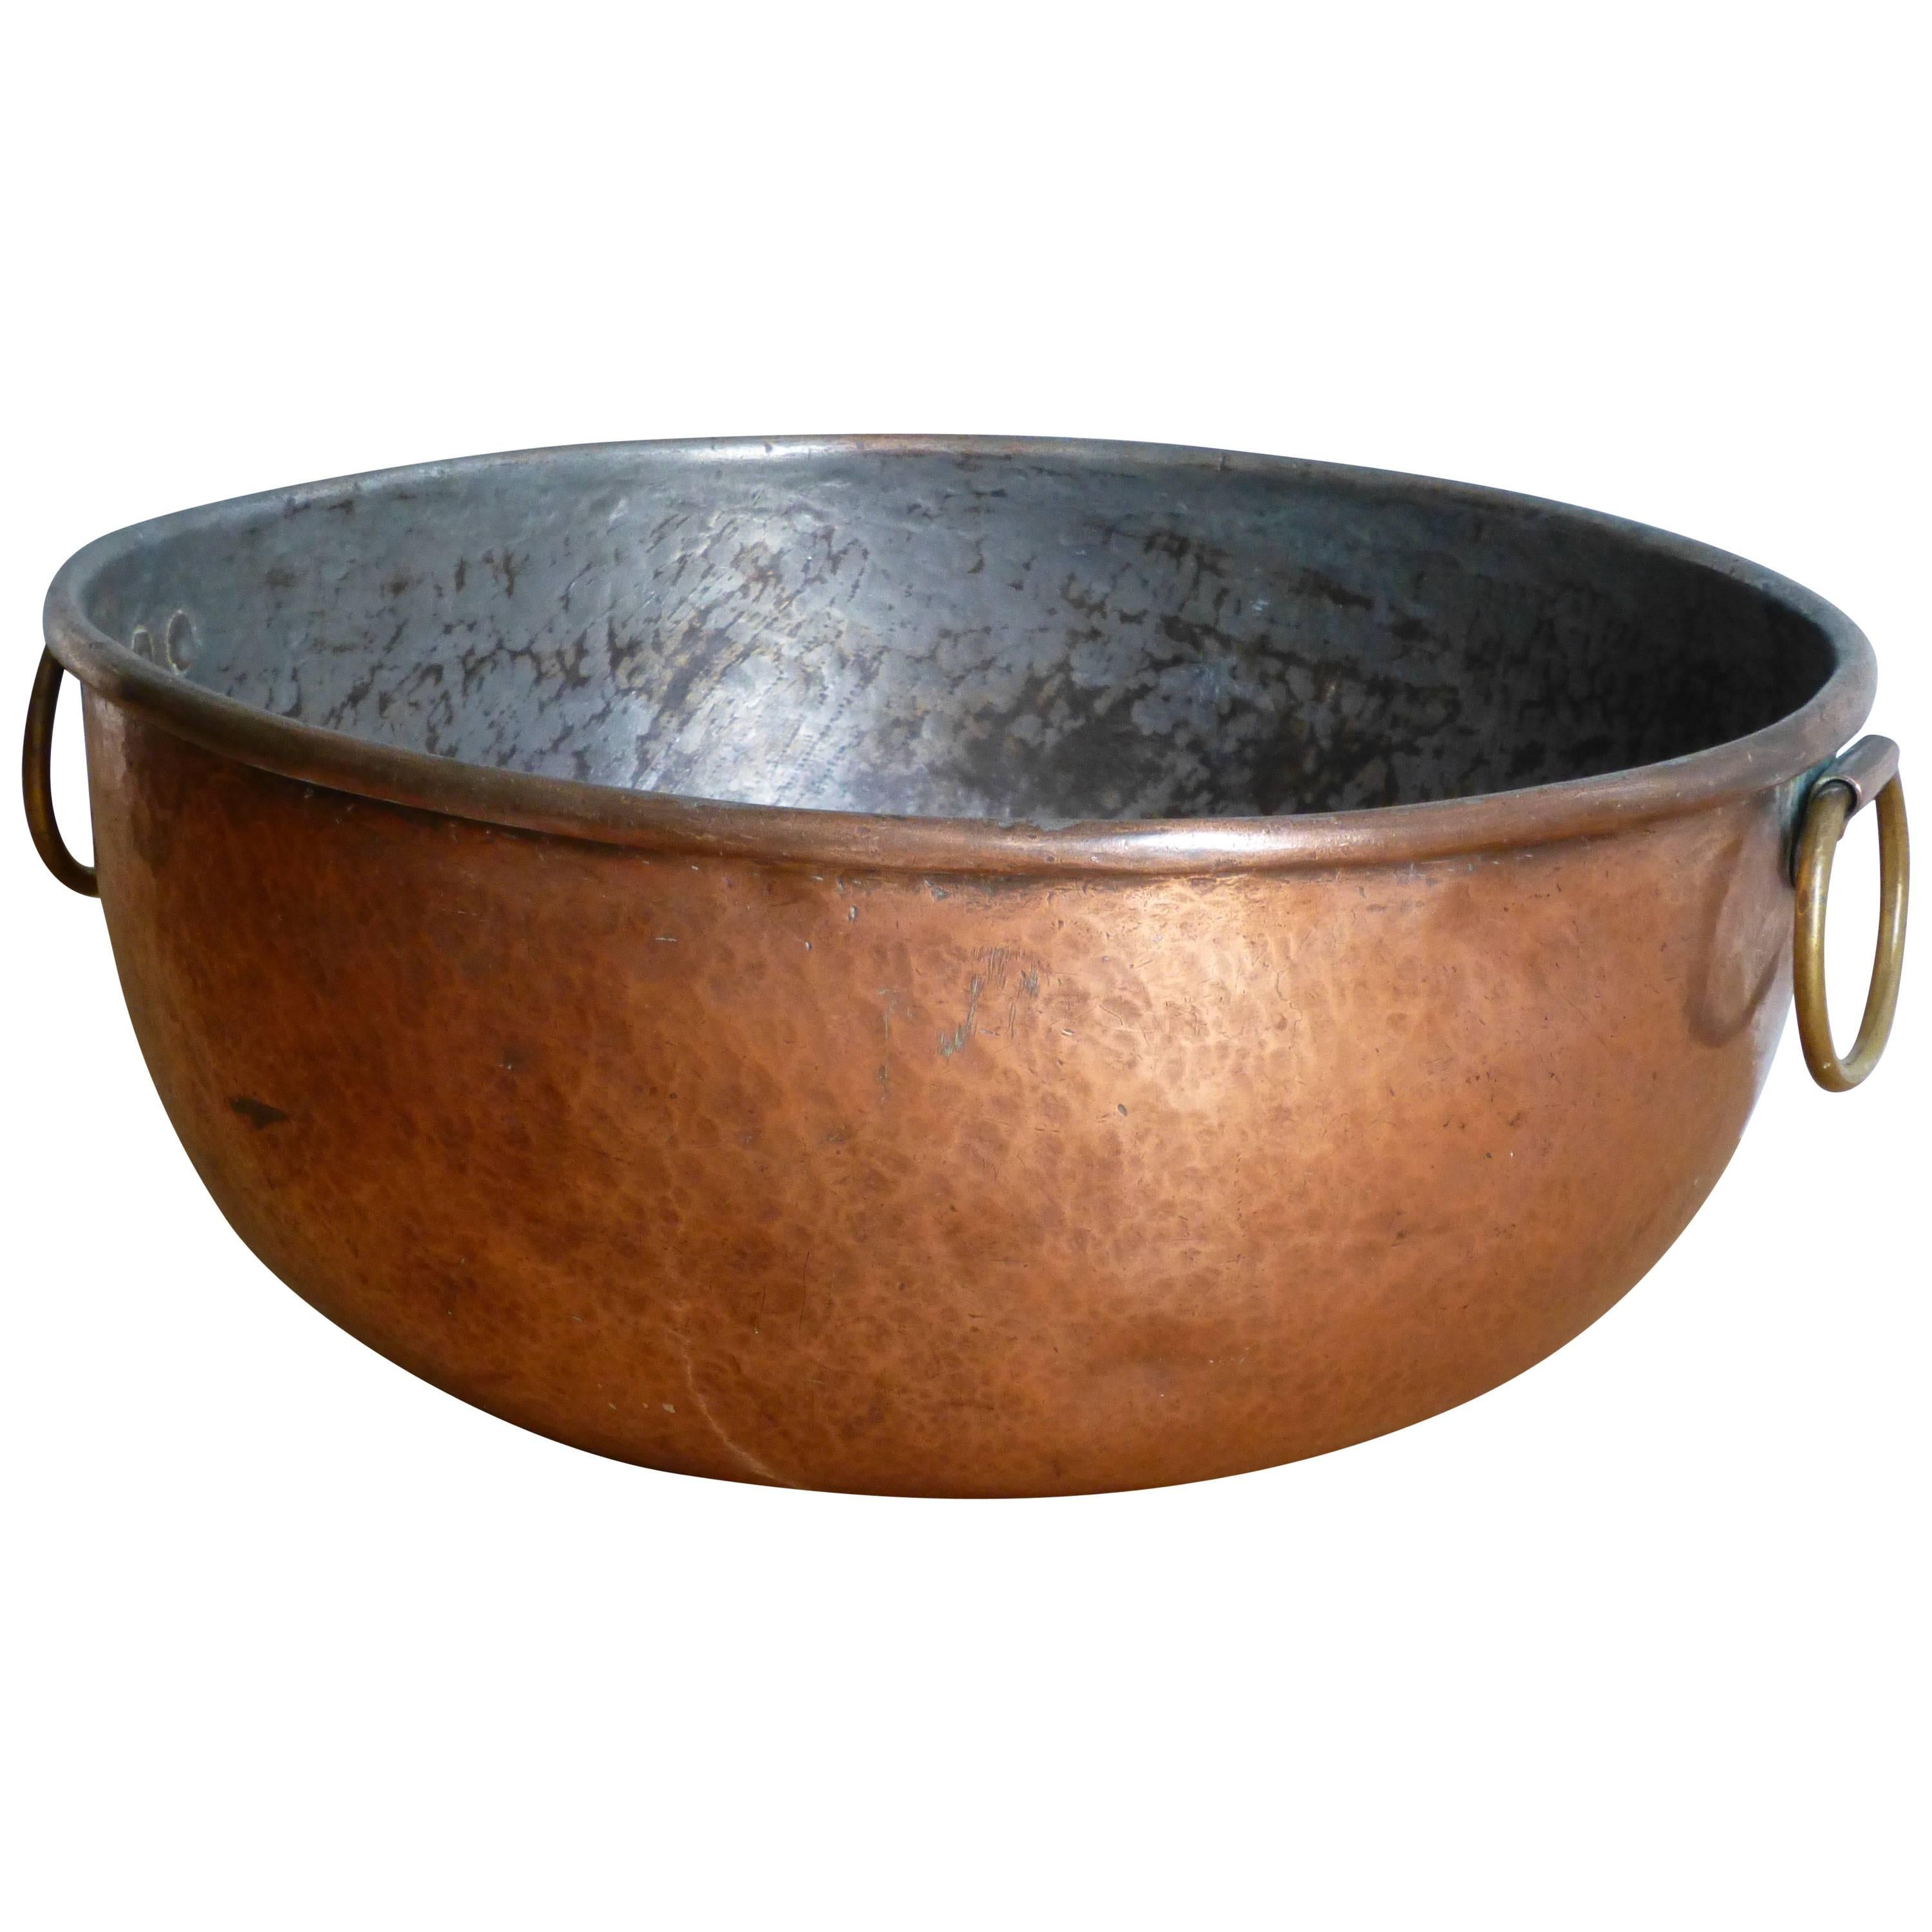 19th Century Copper Jam Bowl